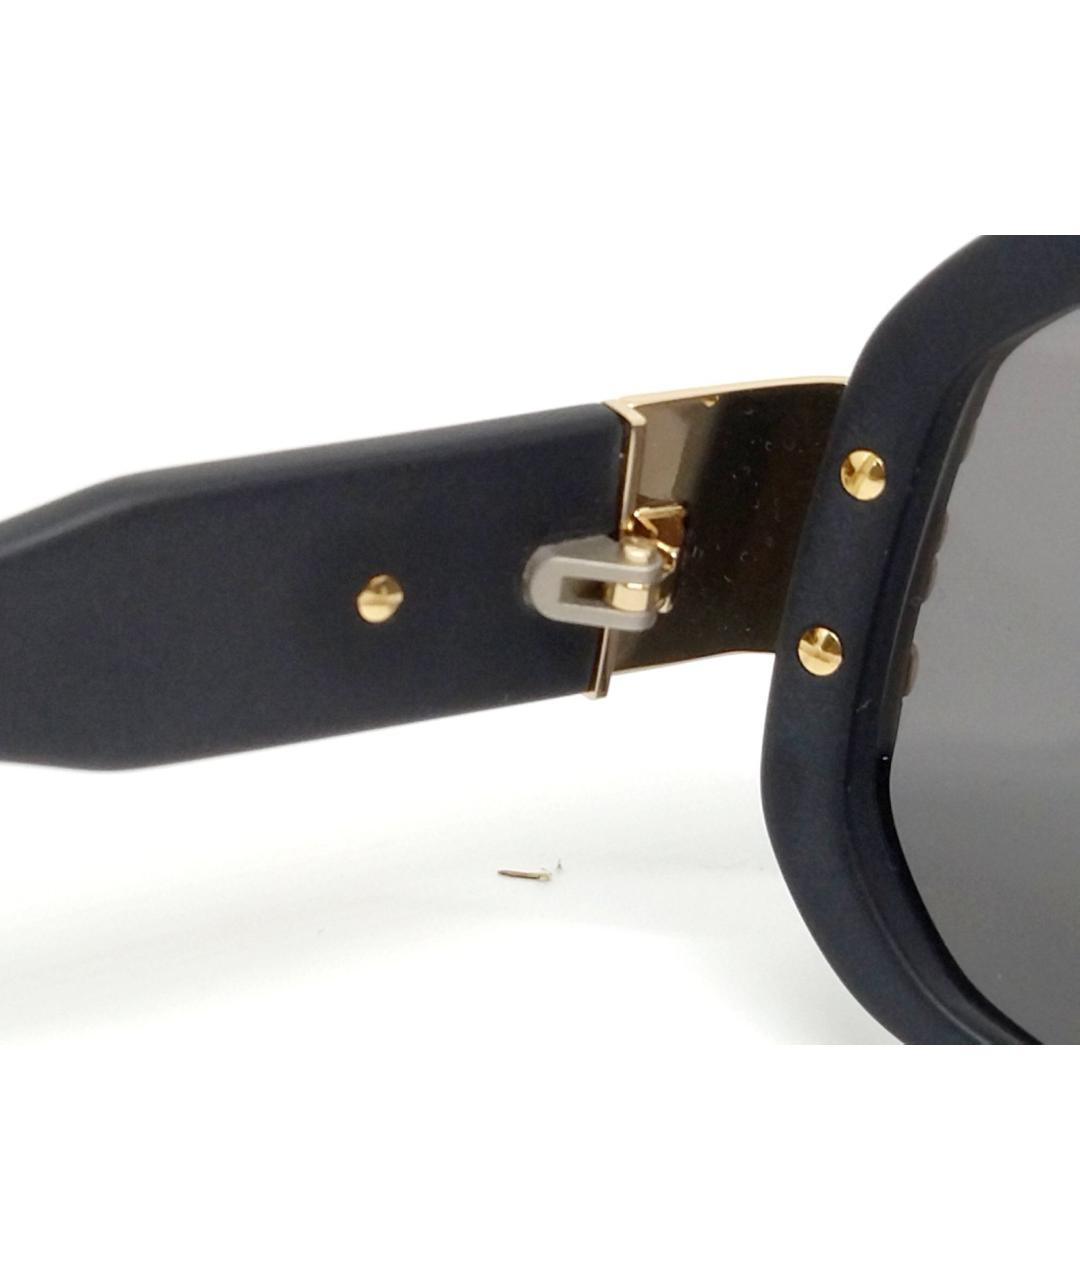 CAZAL Черные пластиковые солнцезащитные очки, фото 4